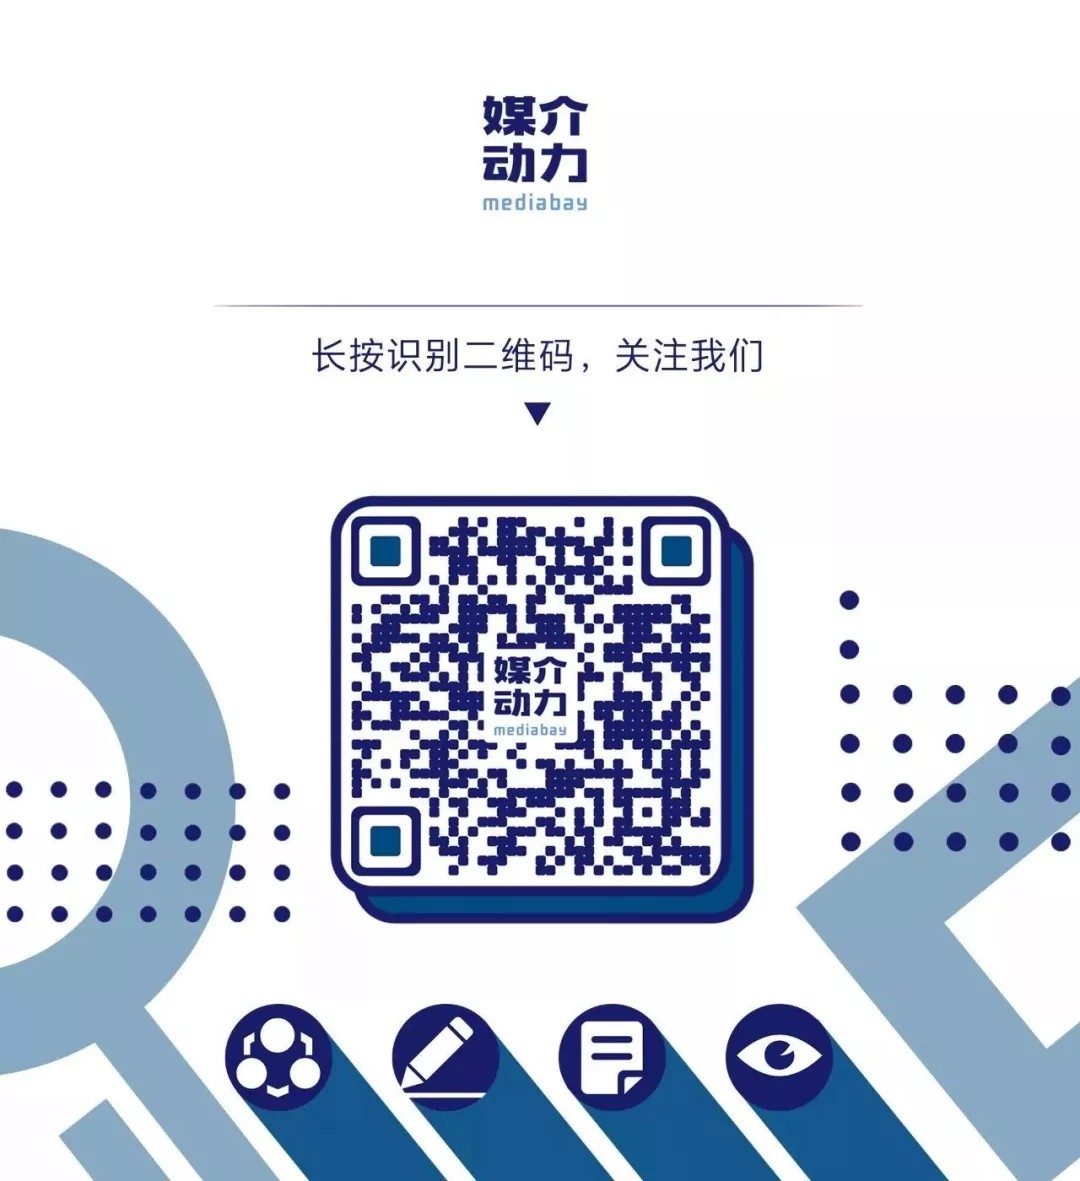 640_看图王.web(2).jpg